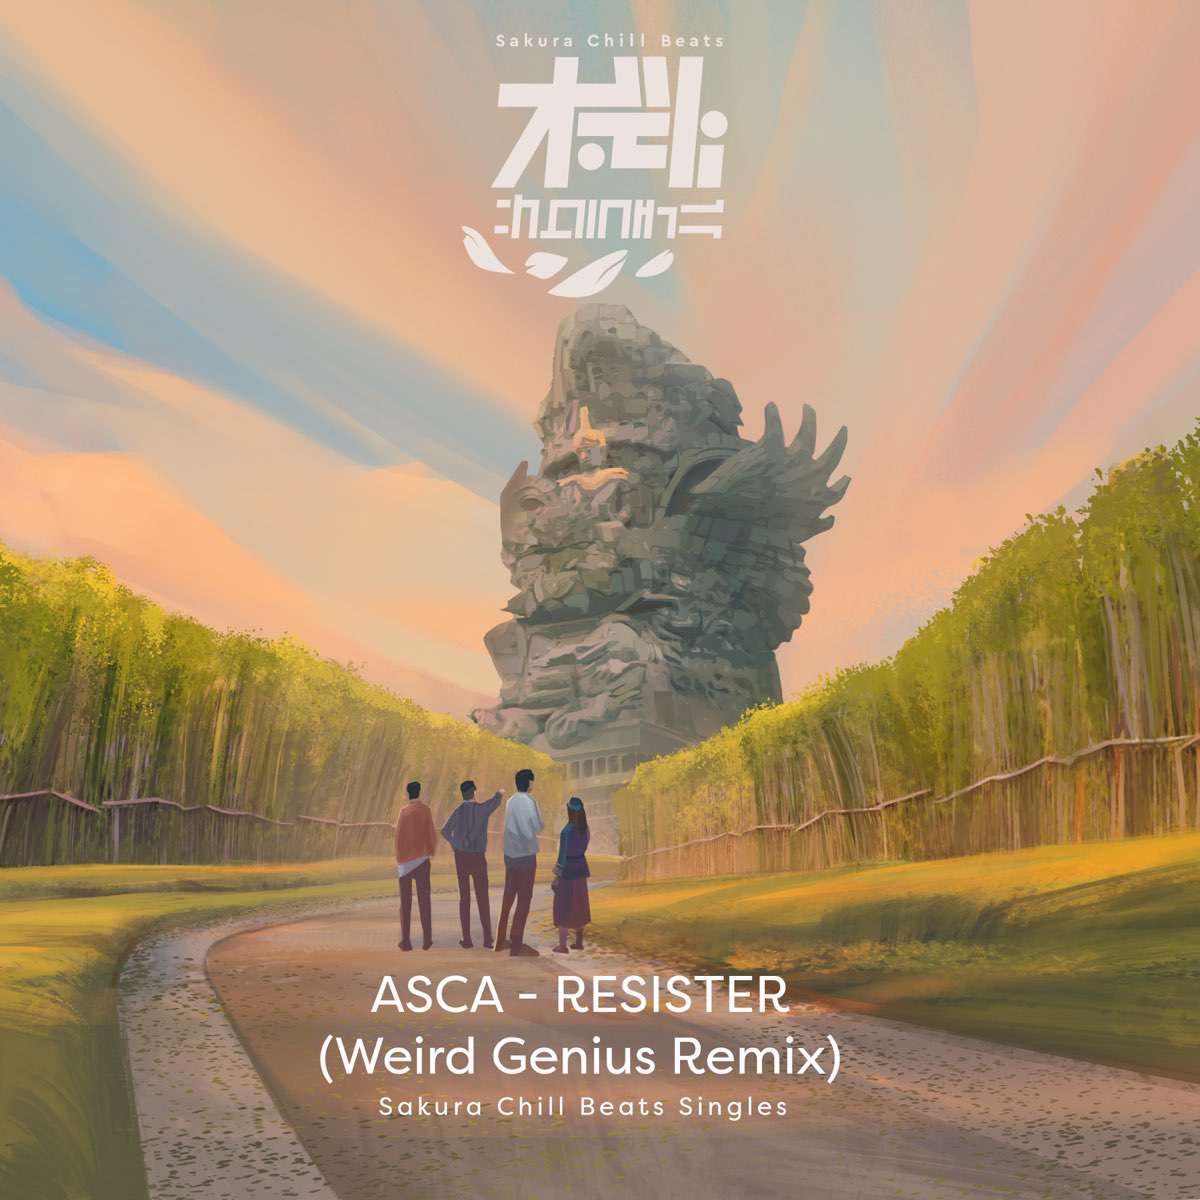 RESISTER (Weird Genius Remix) - SACRA BEATS Singles by ASCA & Weird Genius  on Apple Music